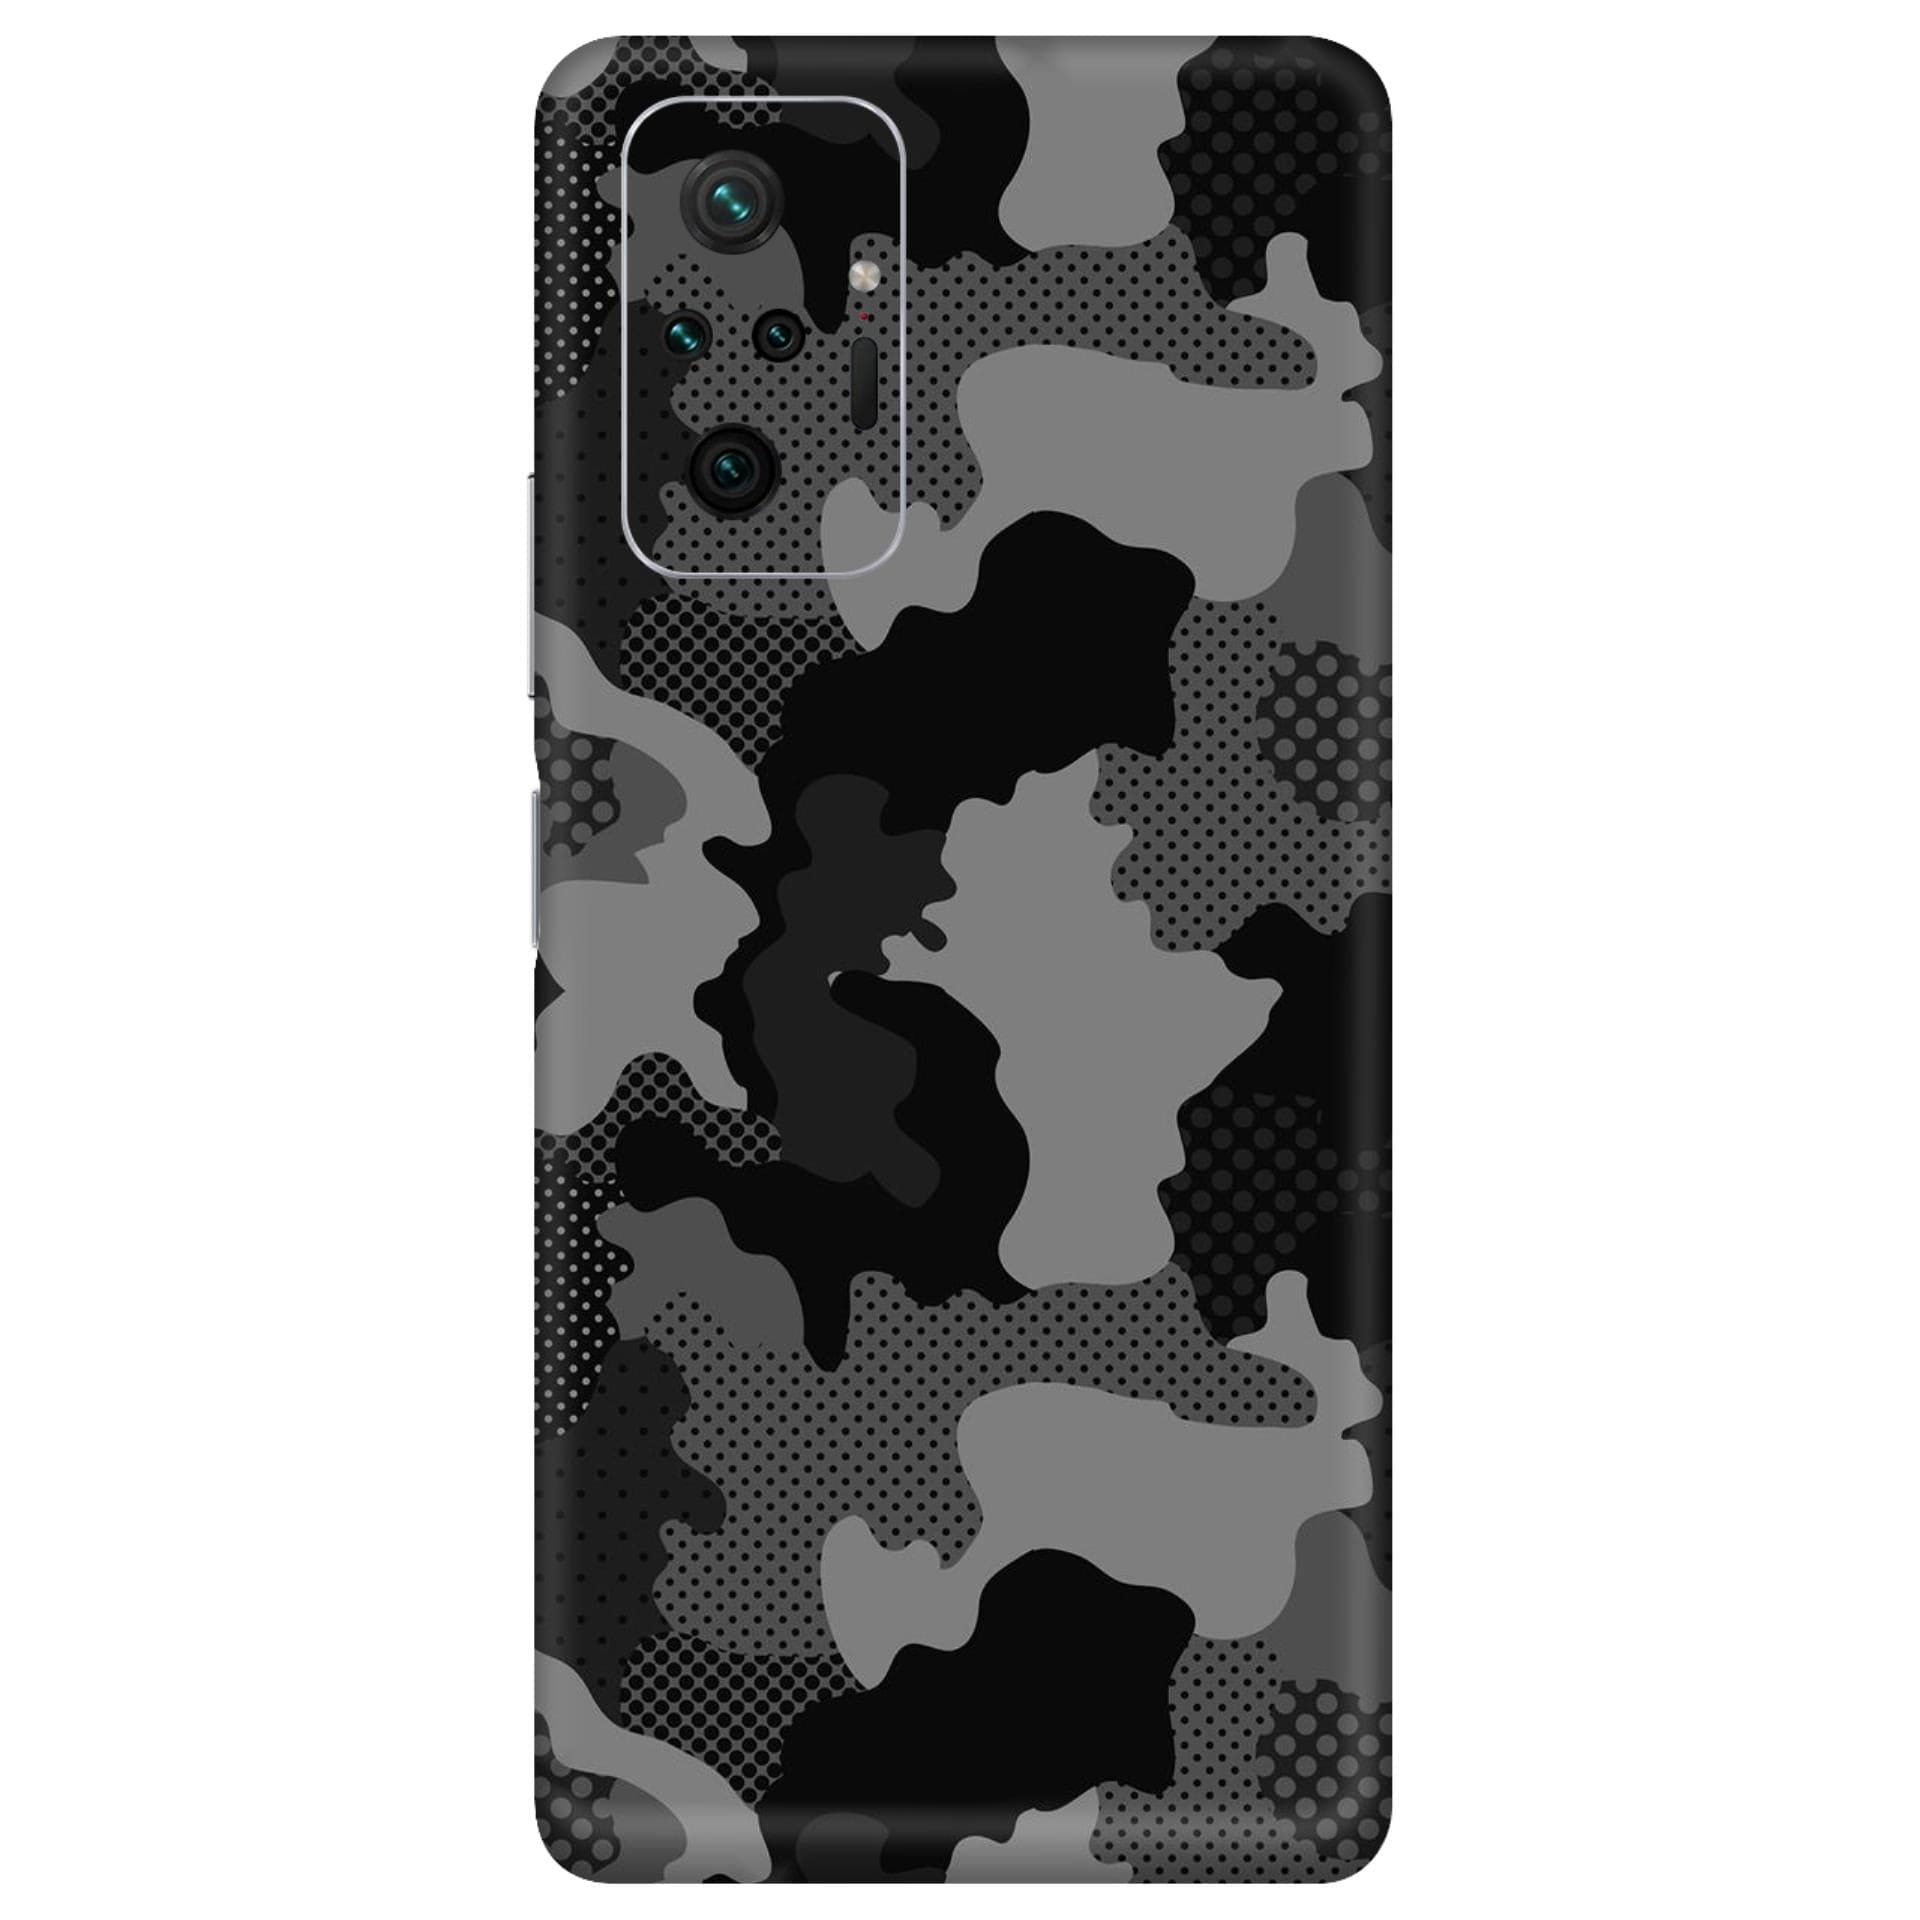 Redmi Note 10 Pro Military Black Camo skins